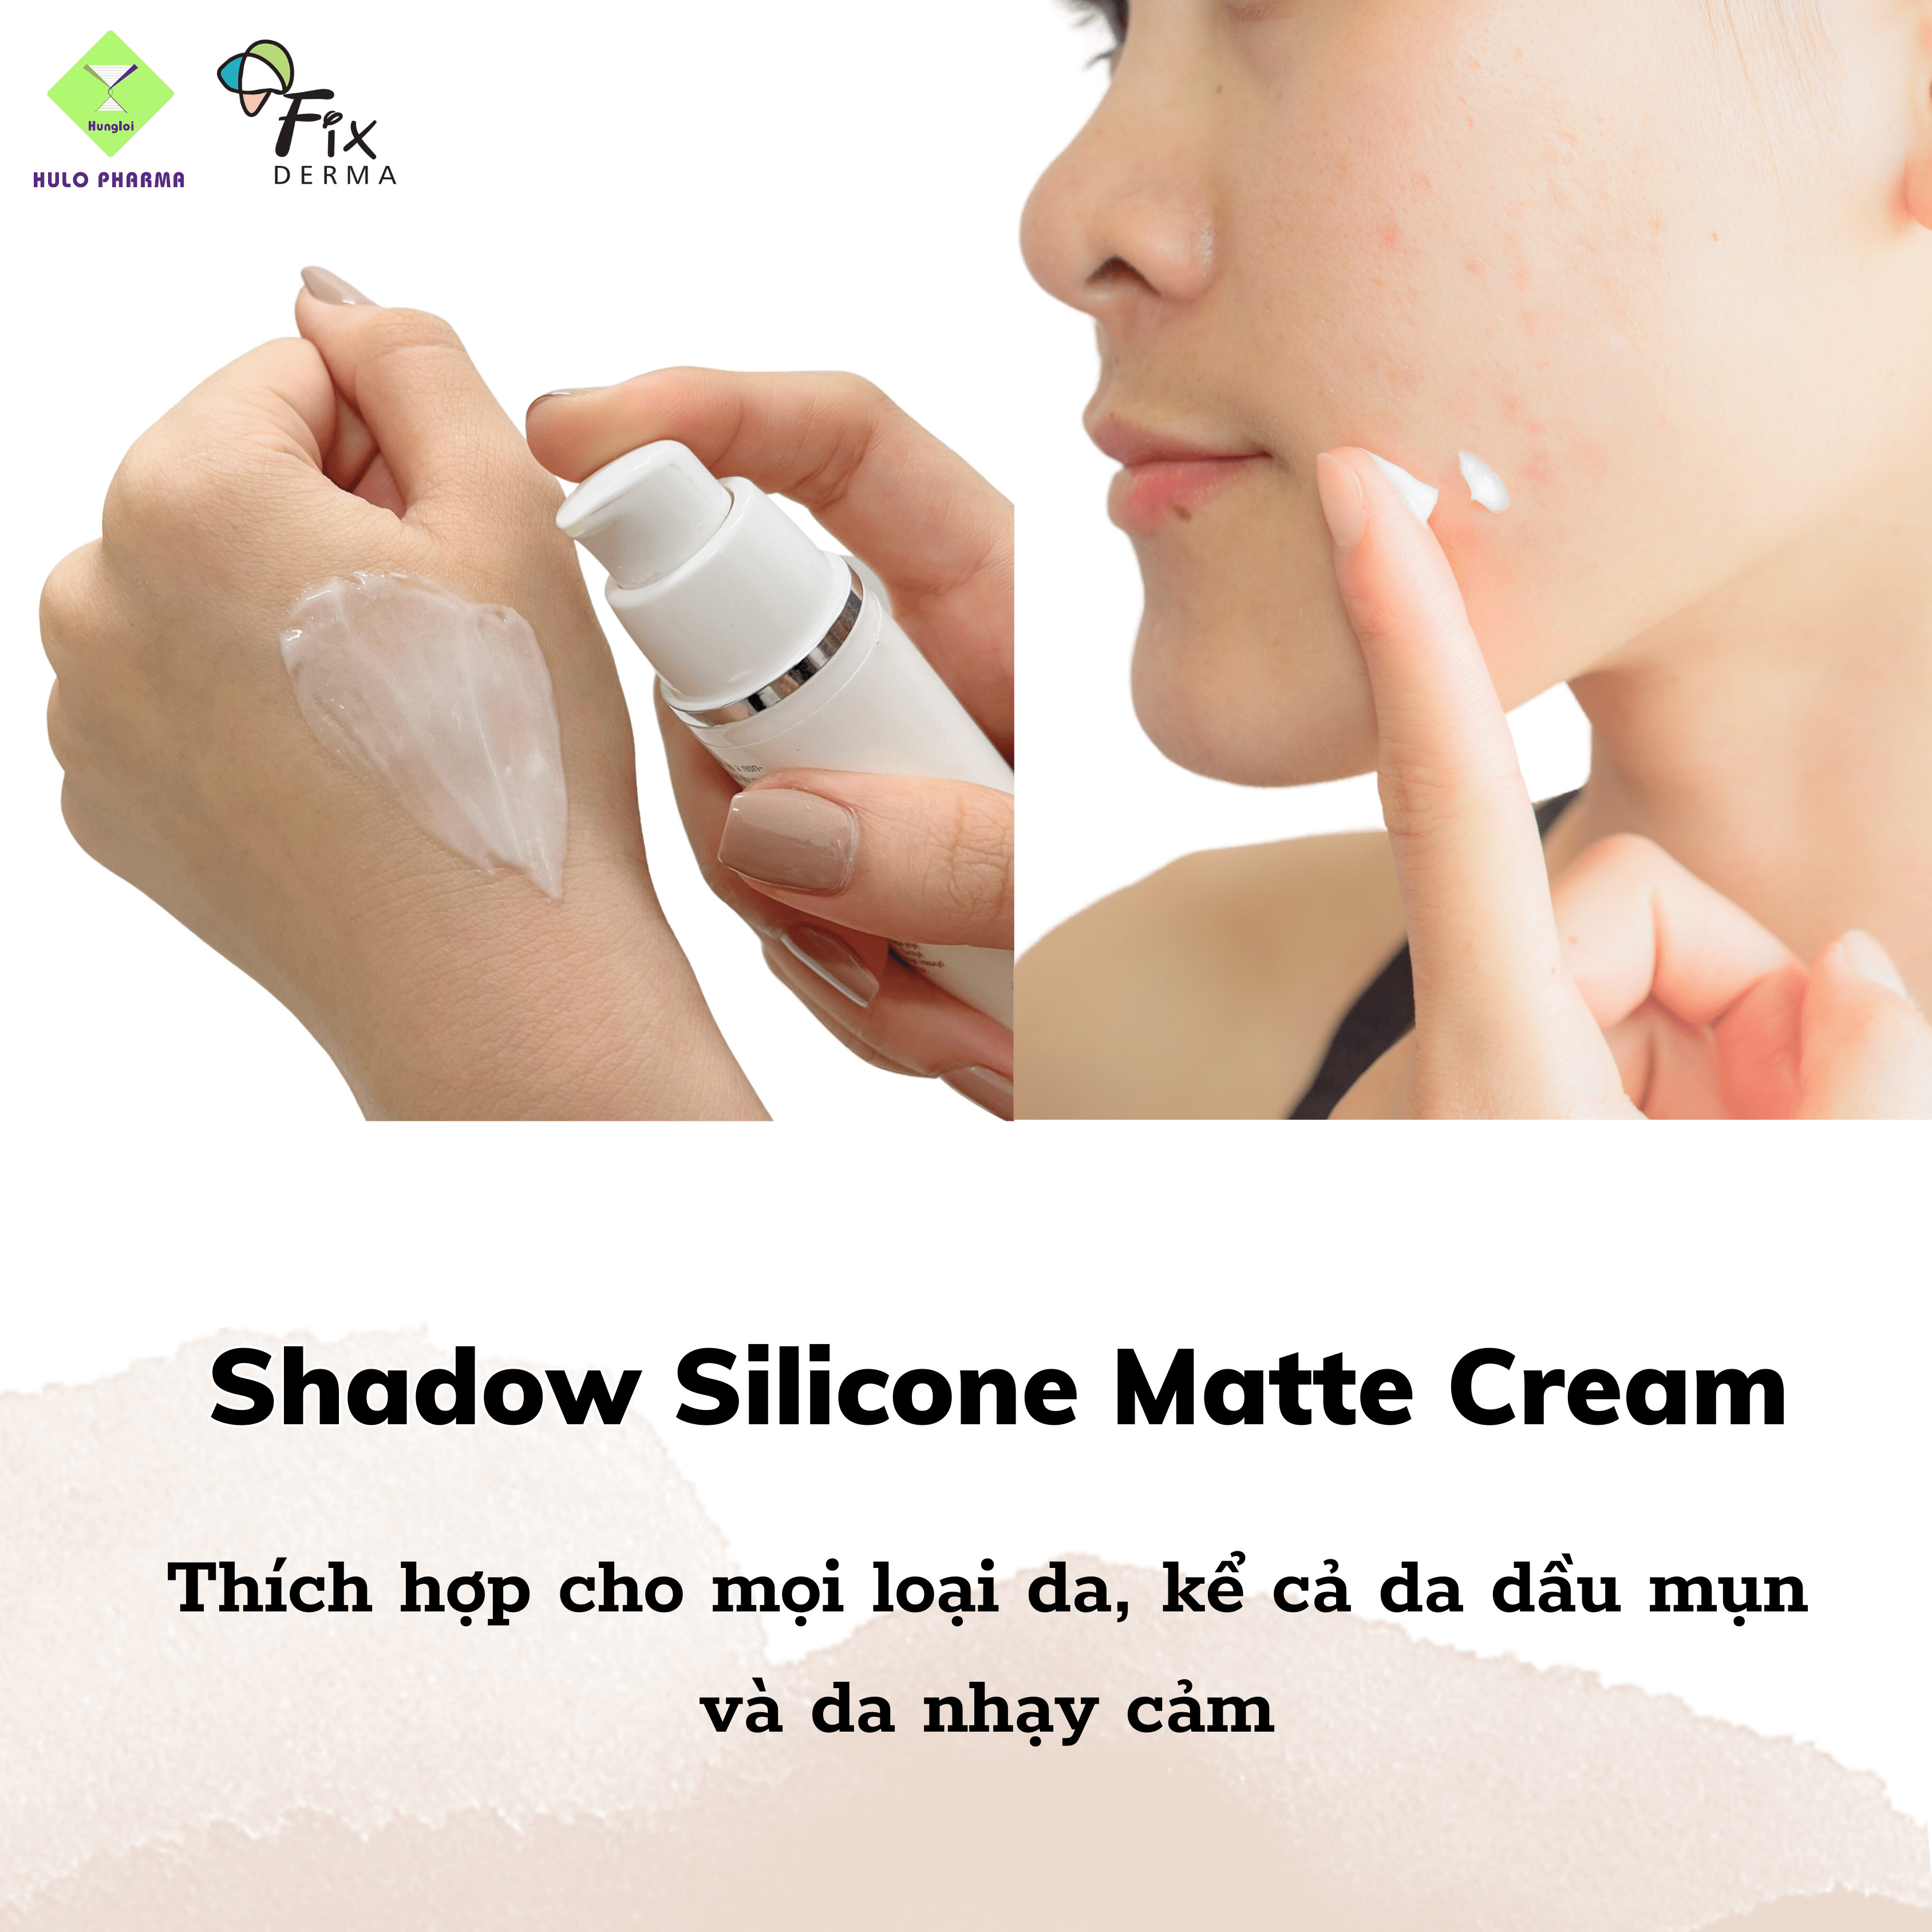 Kem Chống Nắng Không Nhờn, Chống Tia UV, Ánh Sáng Xanh Fixderma Shadow Silicone Matte Cream SPF 50 – 50ml